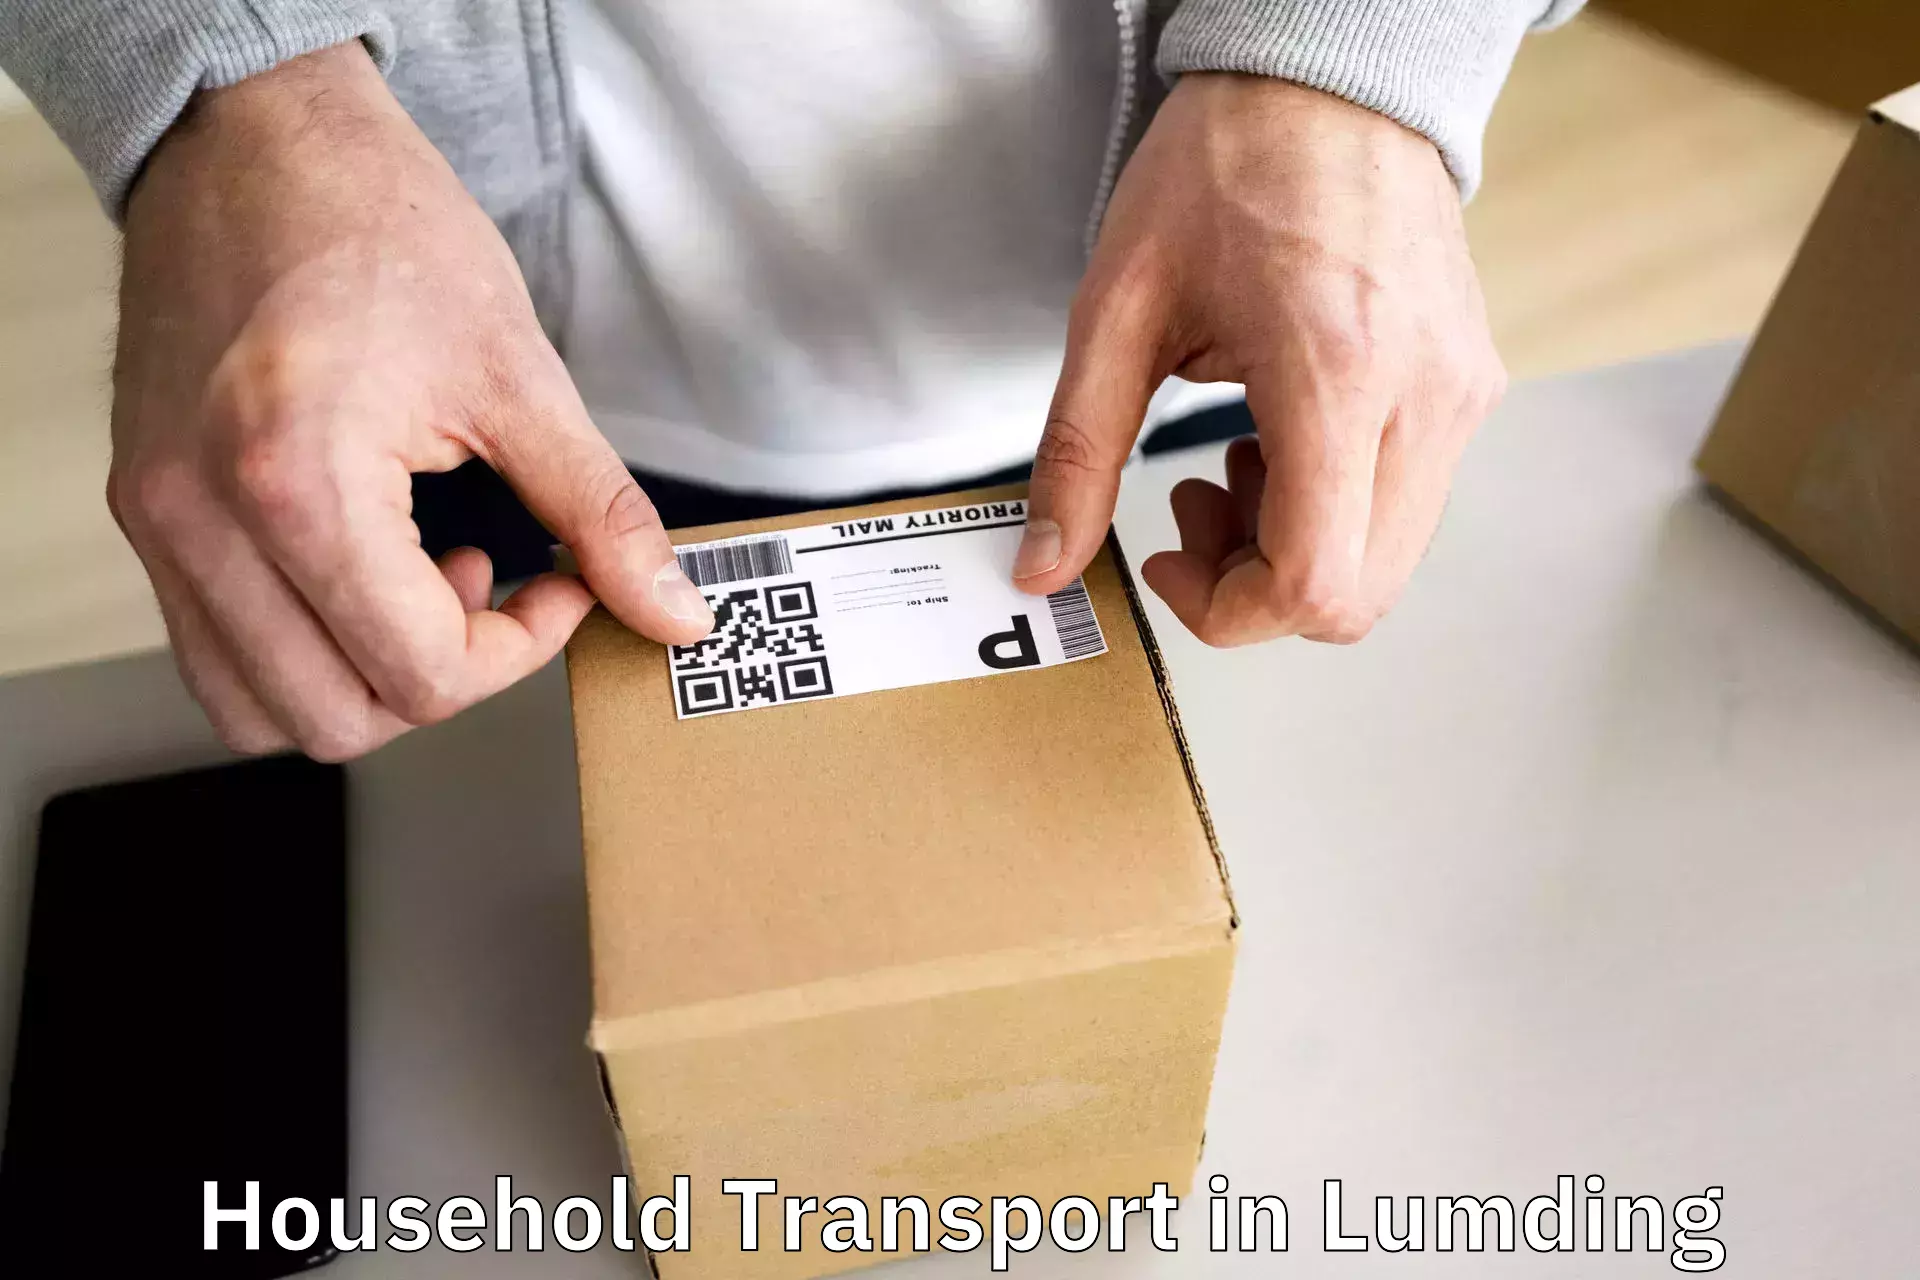 Household goods transport in Lumding